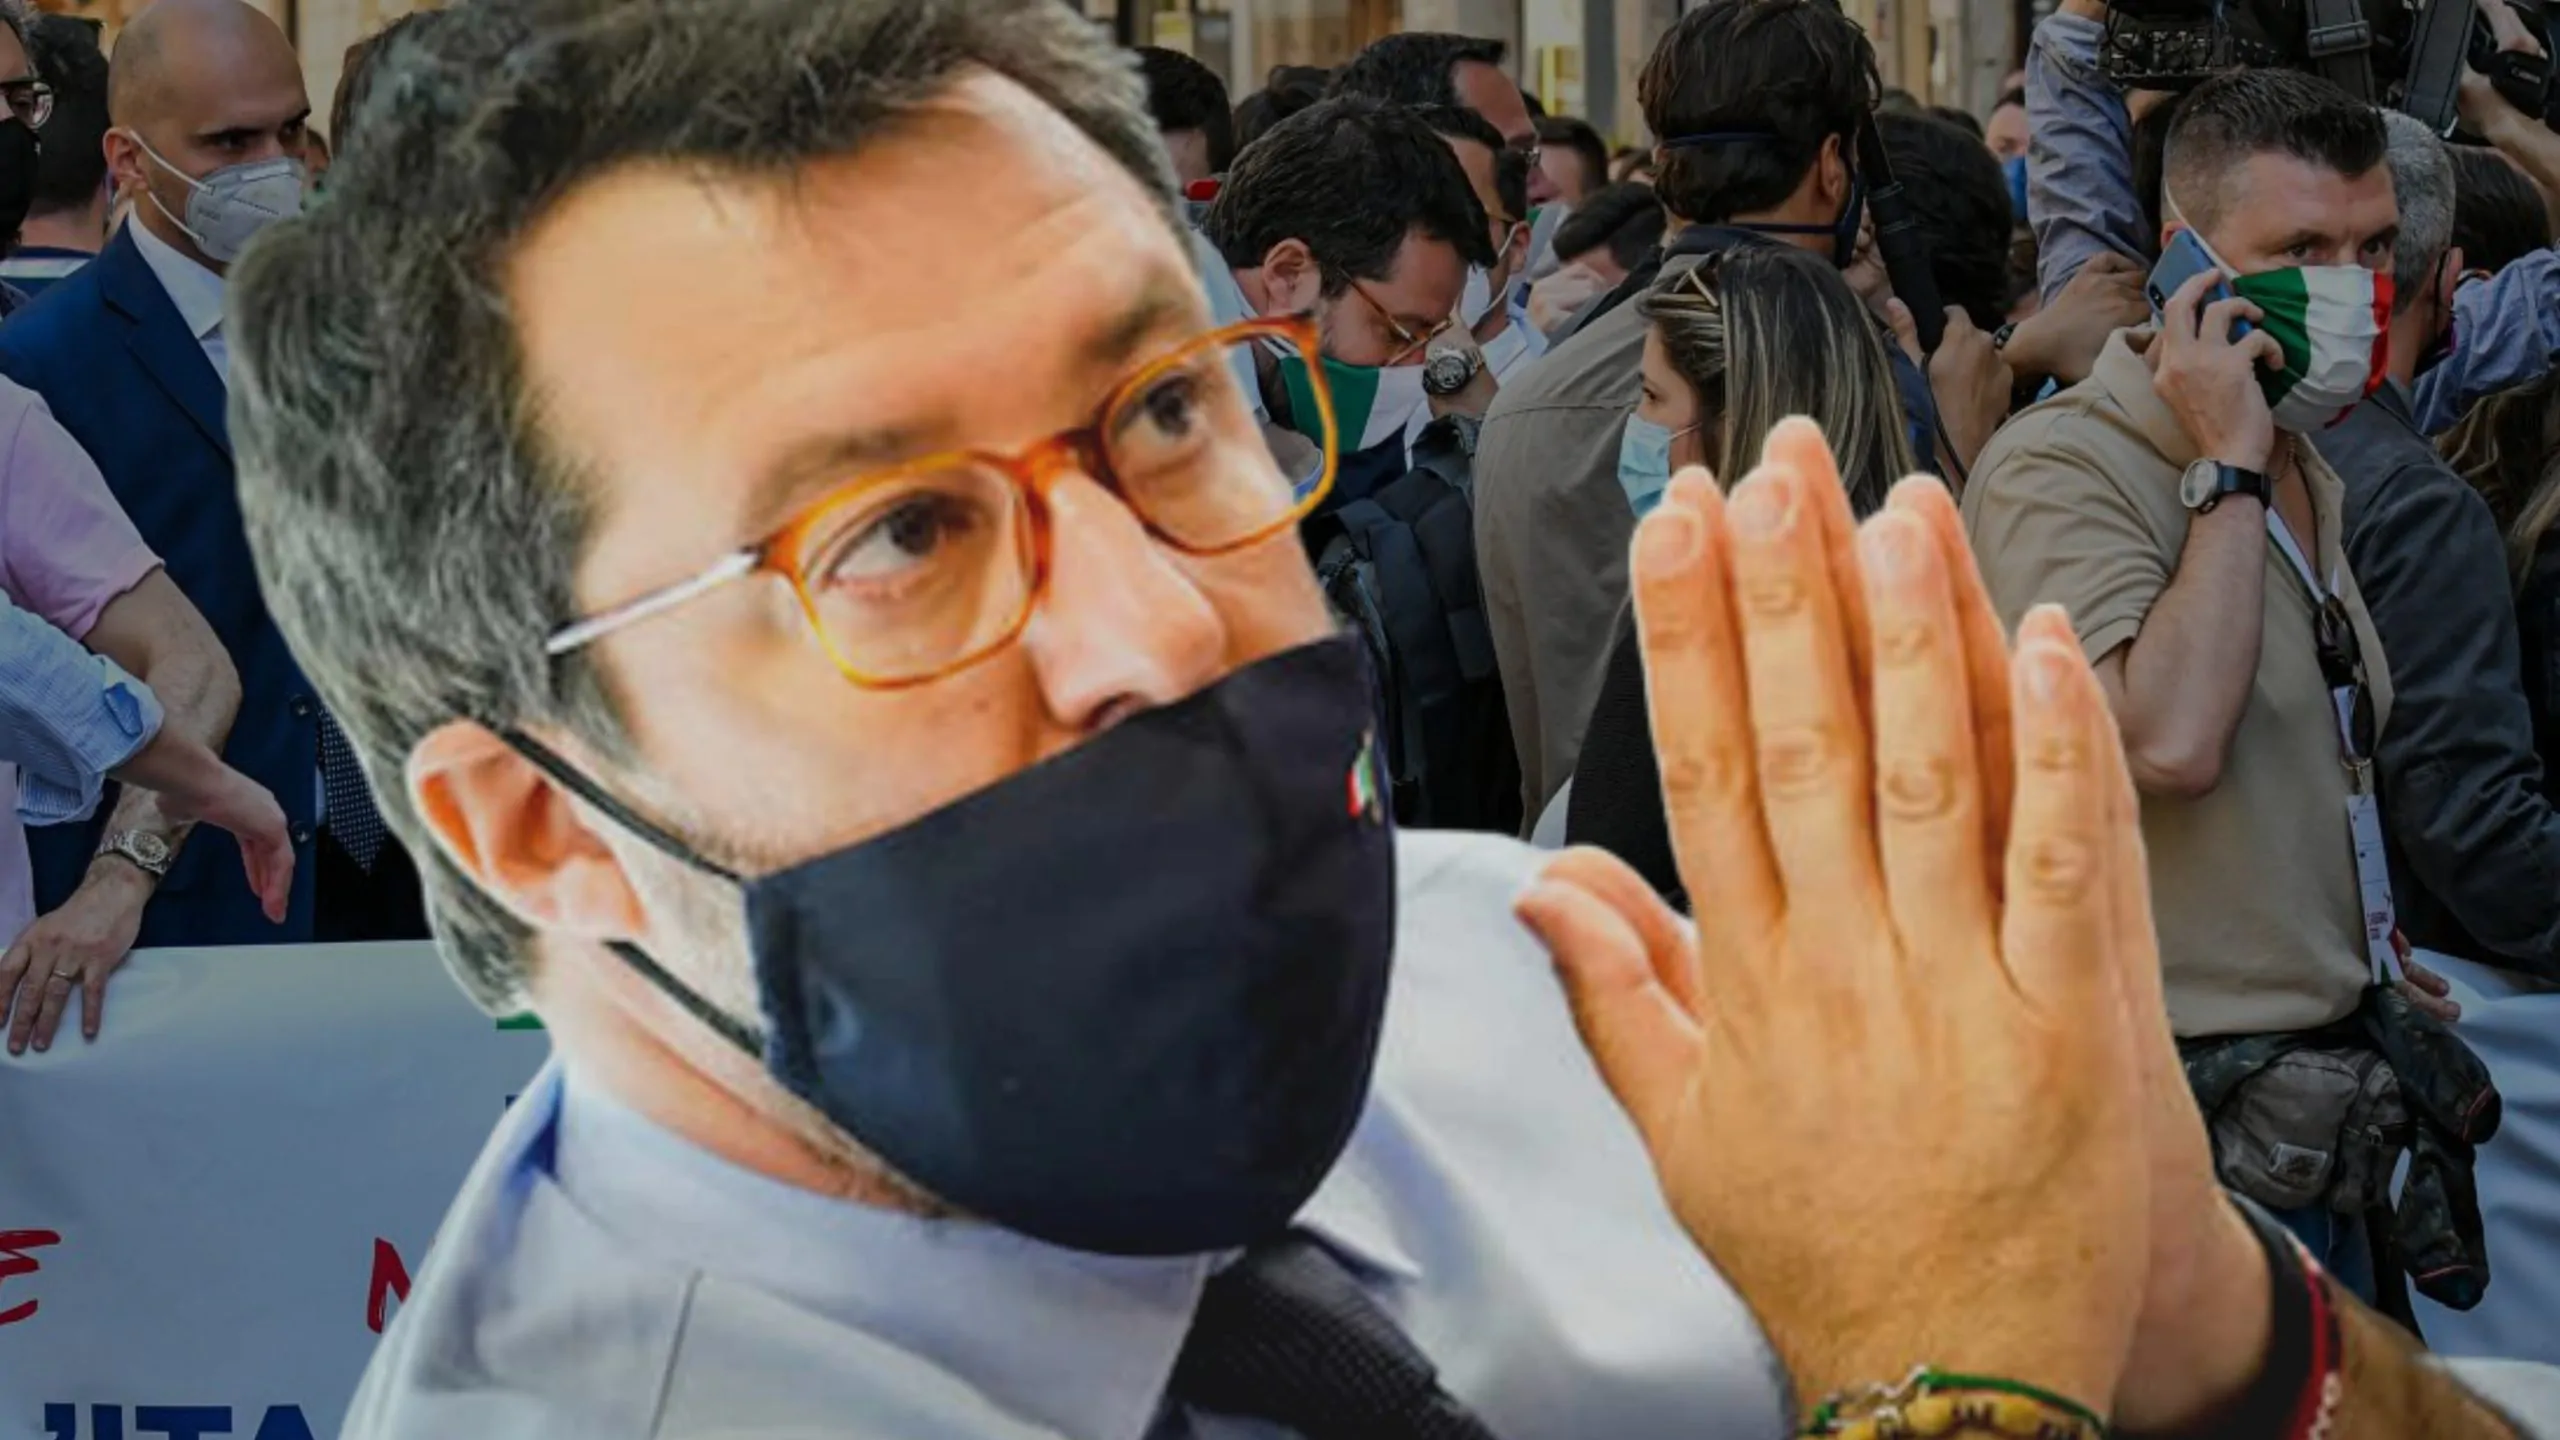 Caserta, Salvini appoggia la protesta dei secondini: i detenuti "Noi denudati e torturati"